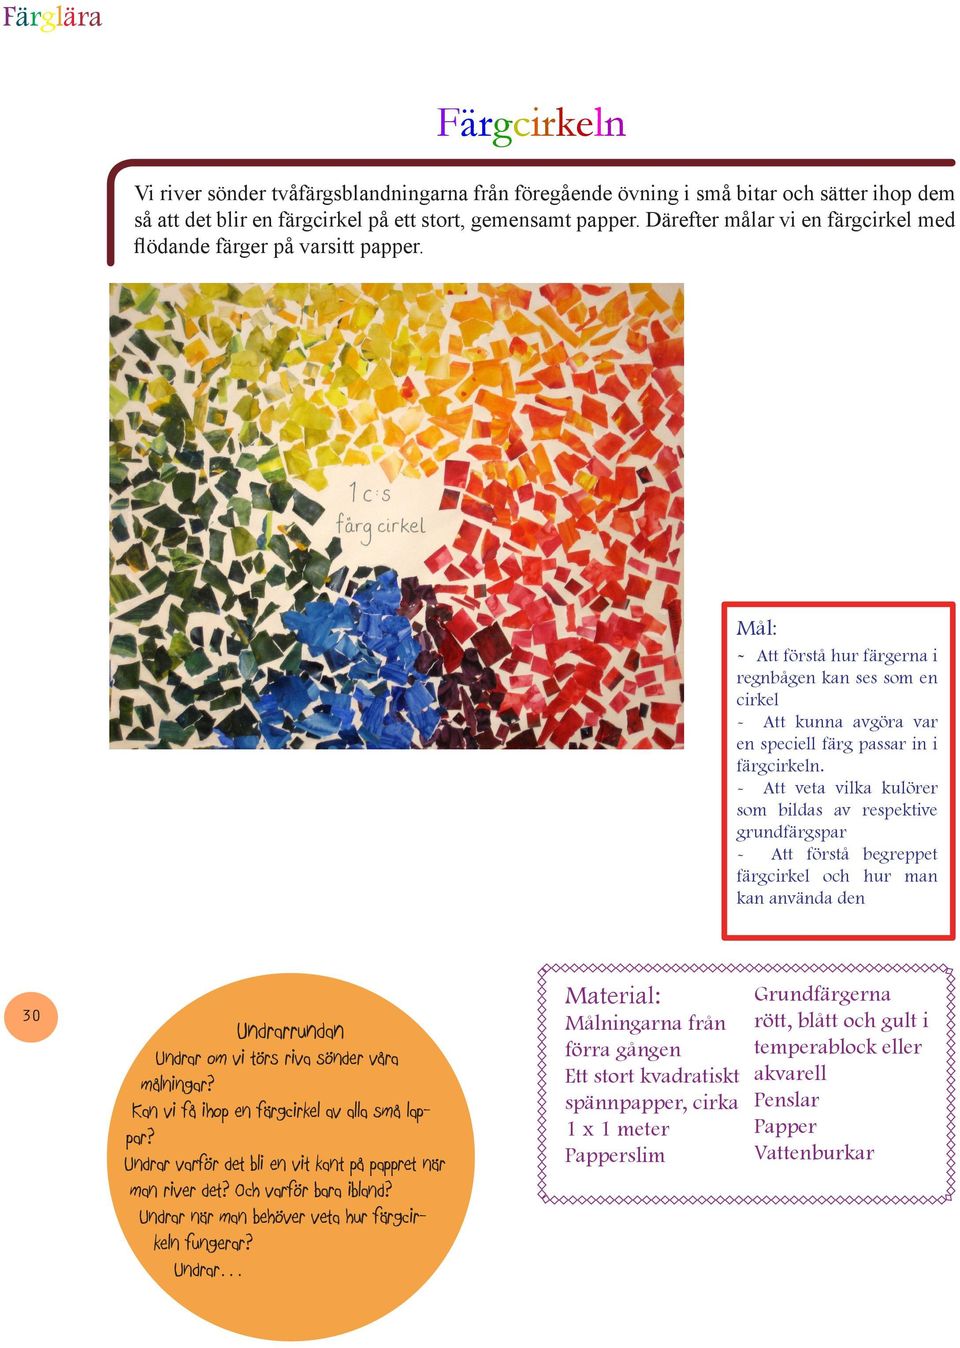 - Att veta vilka kulörer som bildas av respektive grundfärgspar - Att förstå begreppet färgcirkel och hur man kan använda den 30 Undrar om vi törs riva sönder våra målningar?